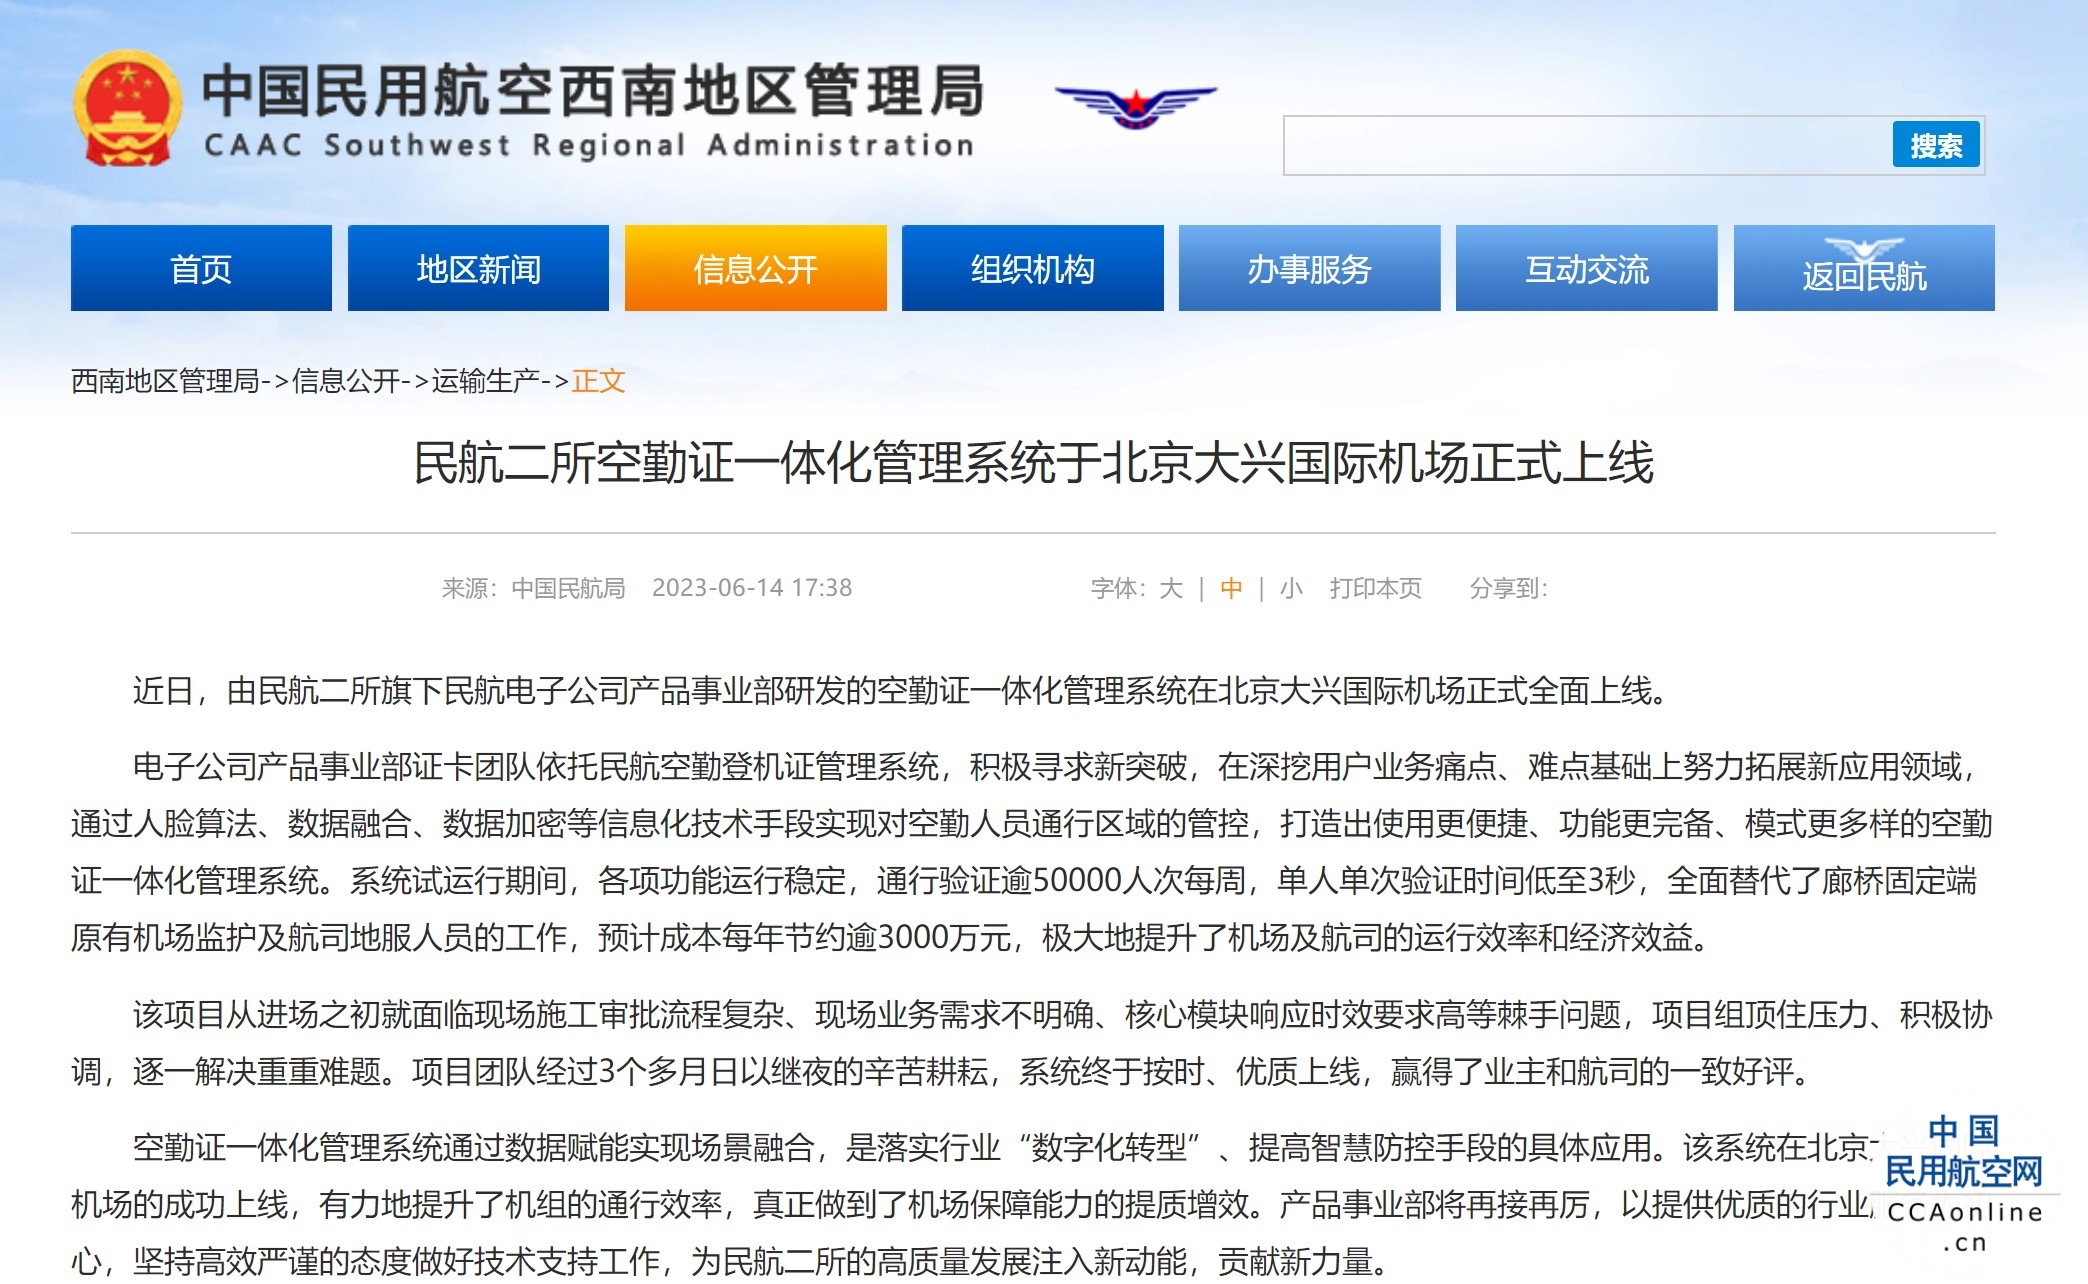 民航二所空勤证一体化管理系统于北京大兴国际机场正式上线